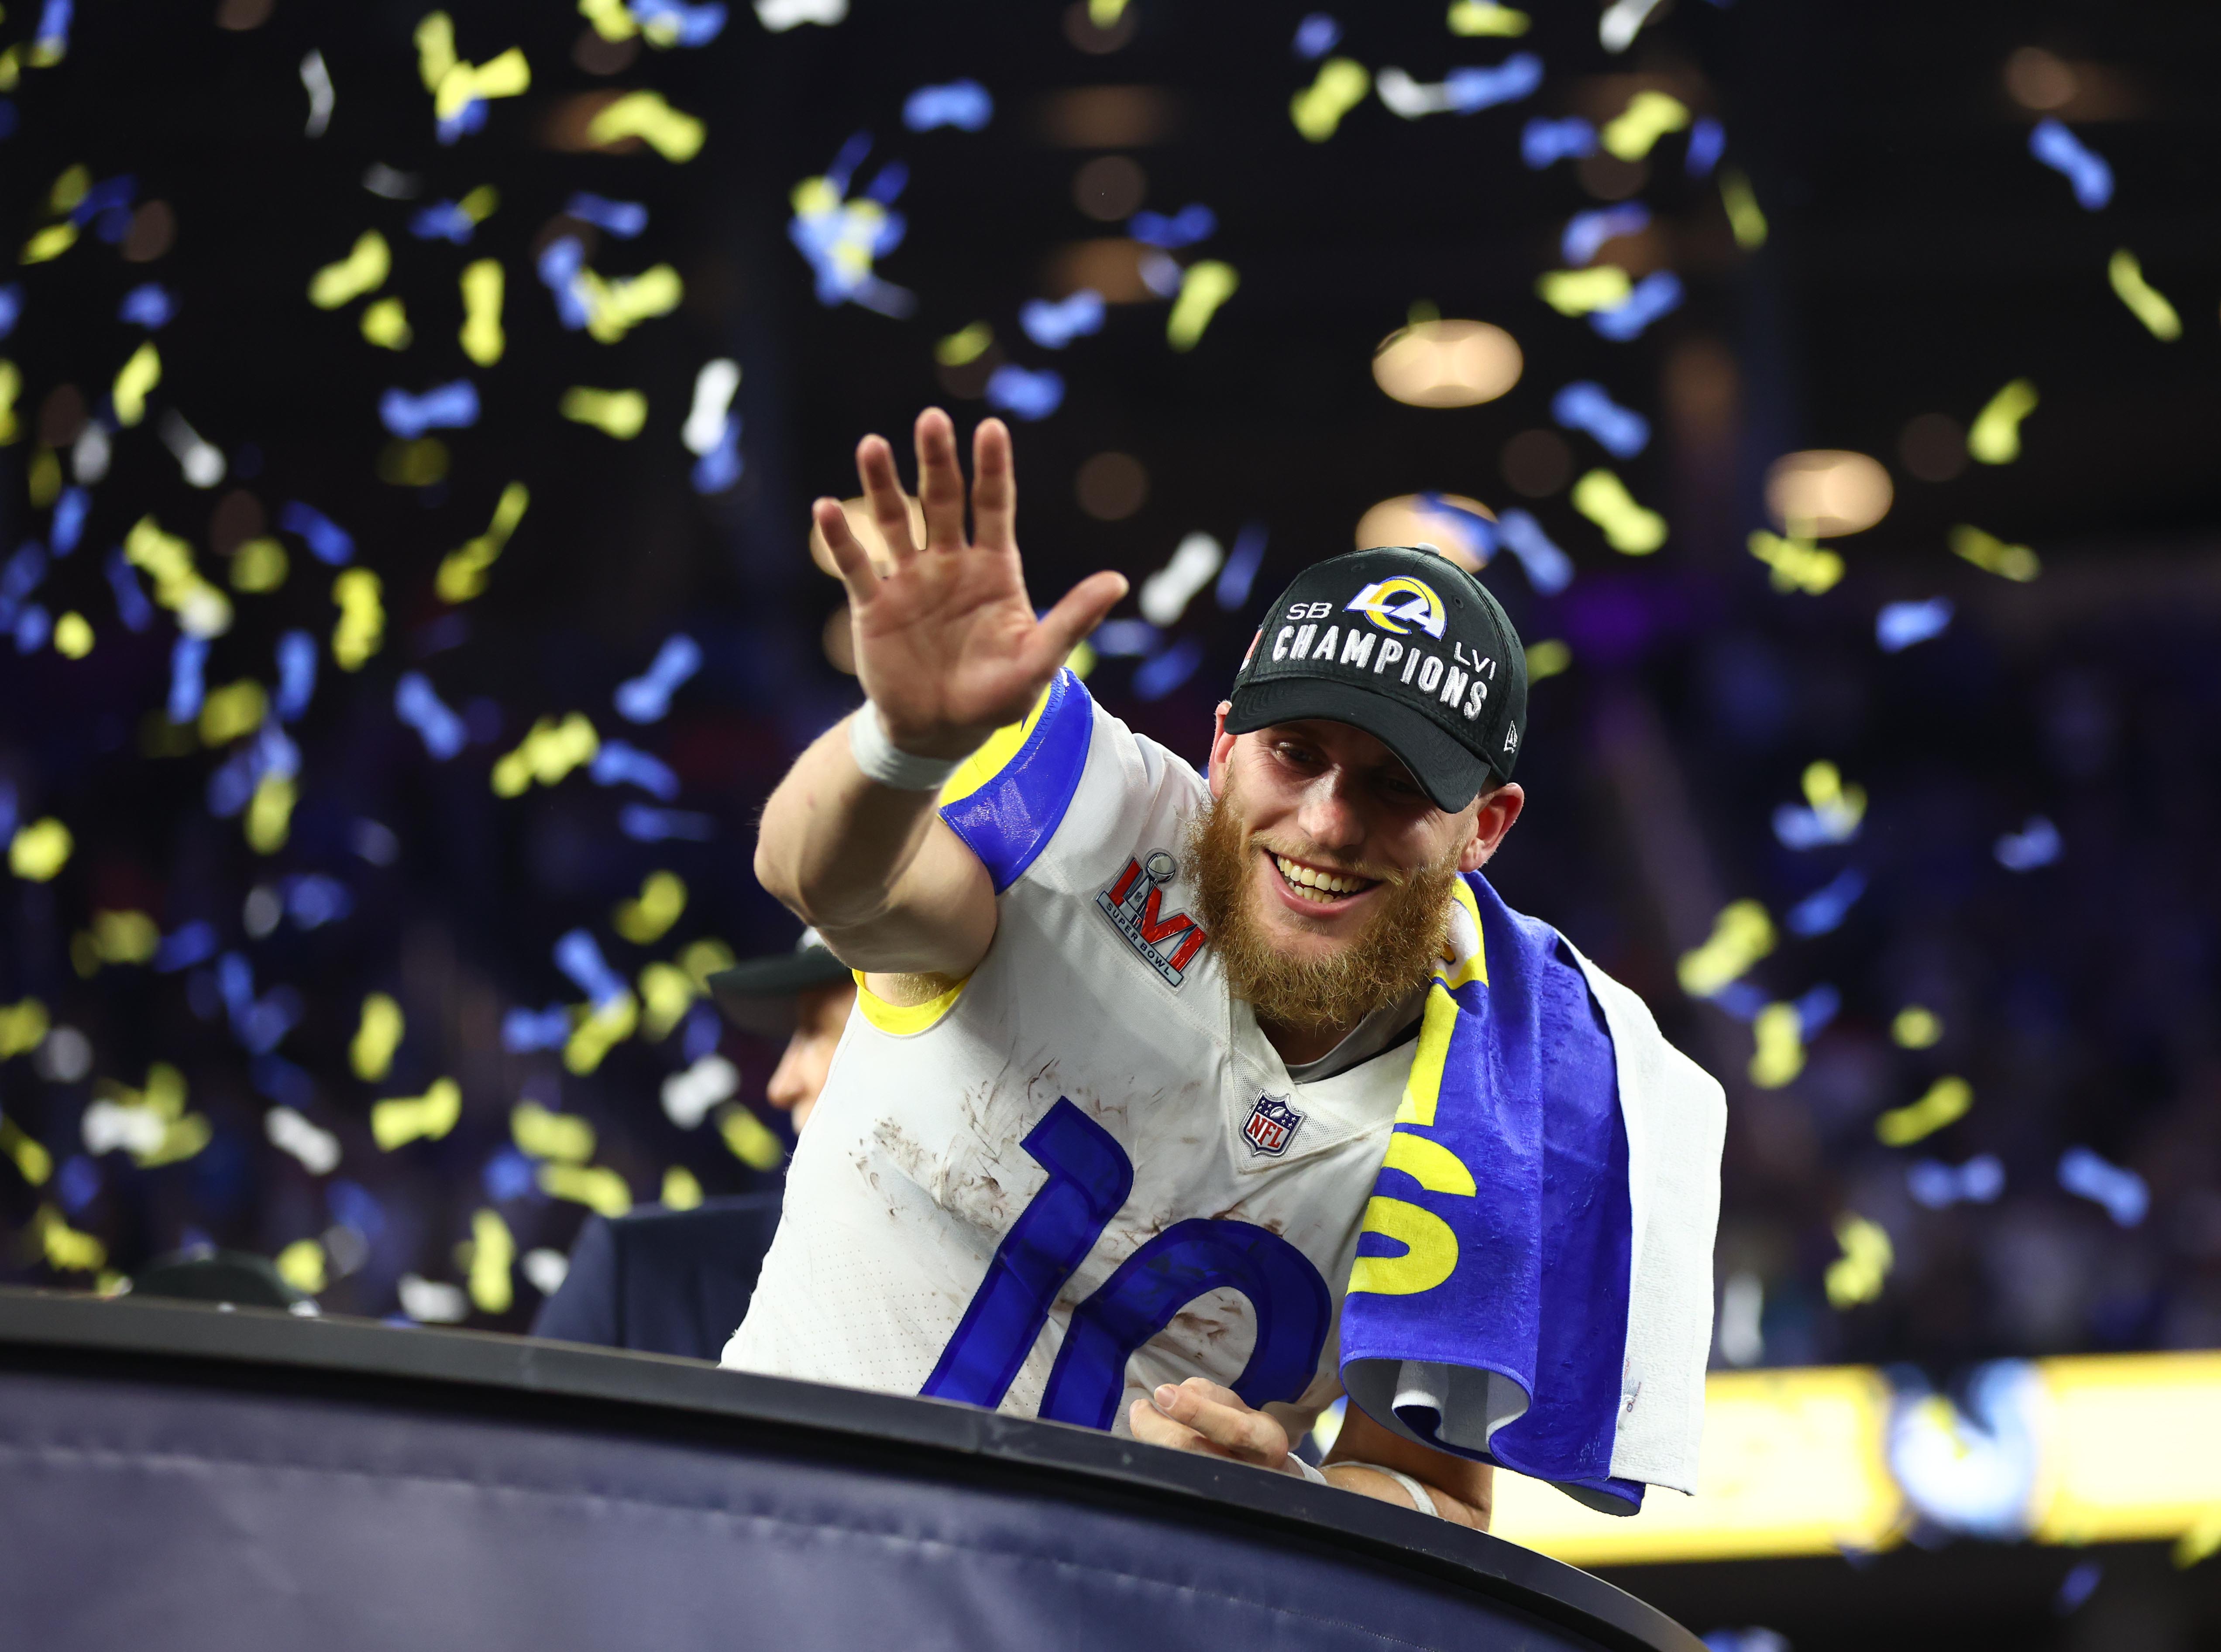 Super Bowl Live: Kupp named Super Bowl MVP after winning TD